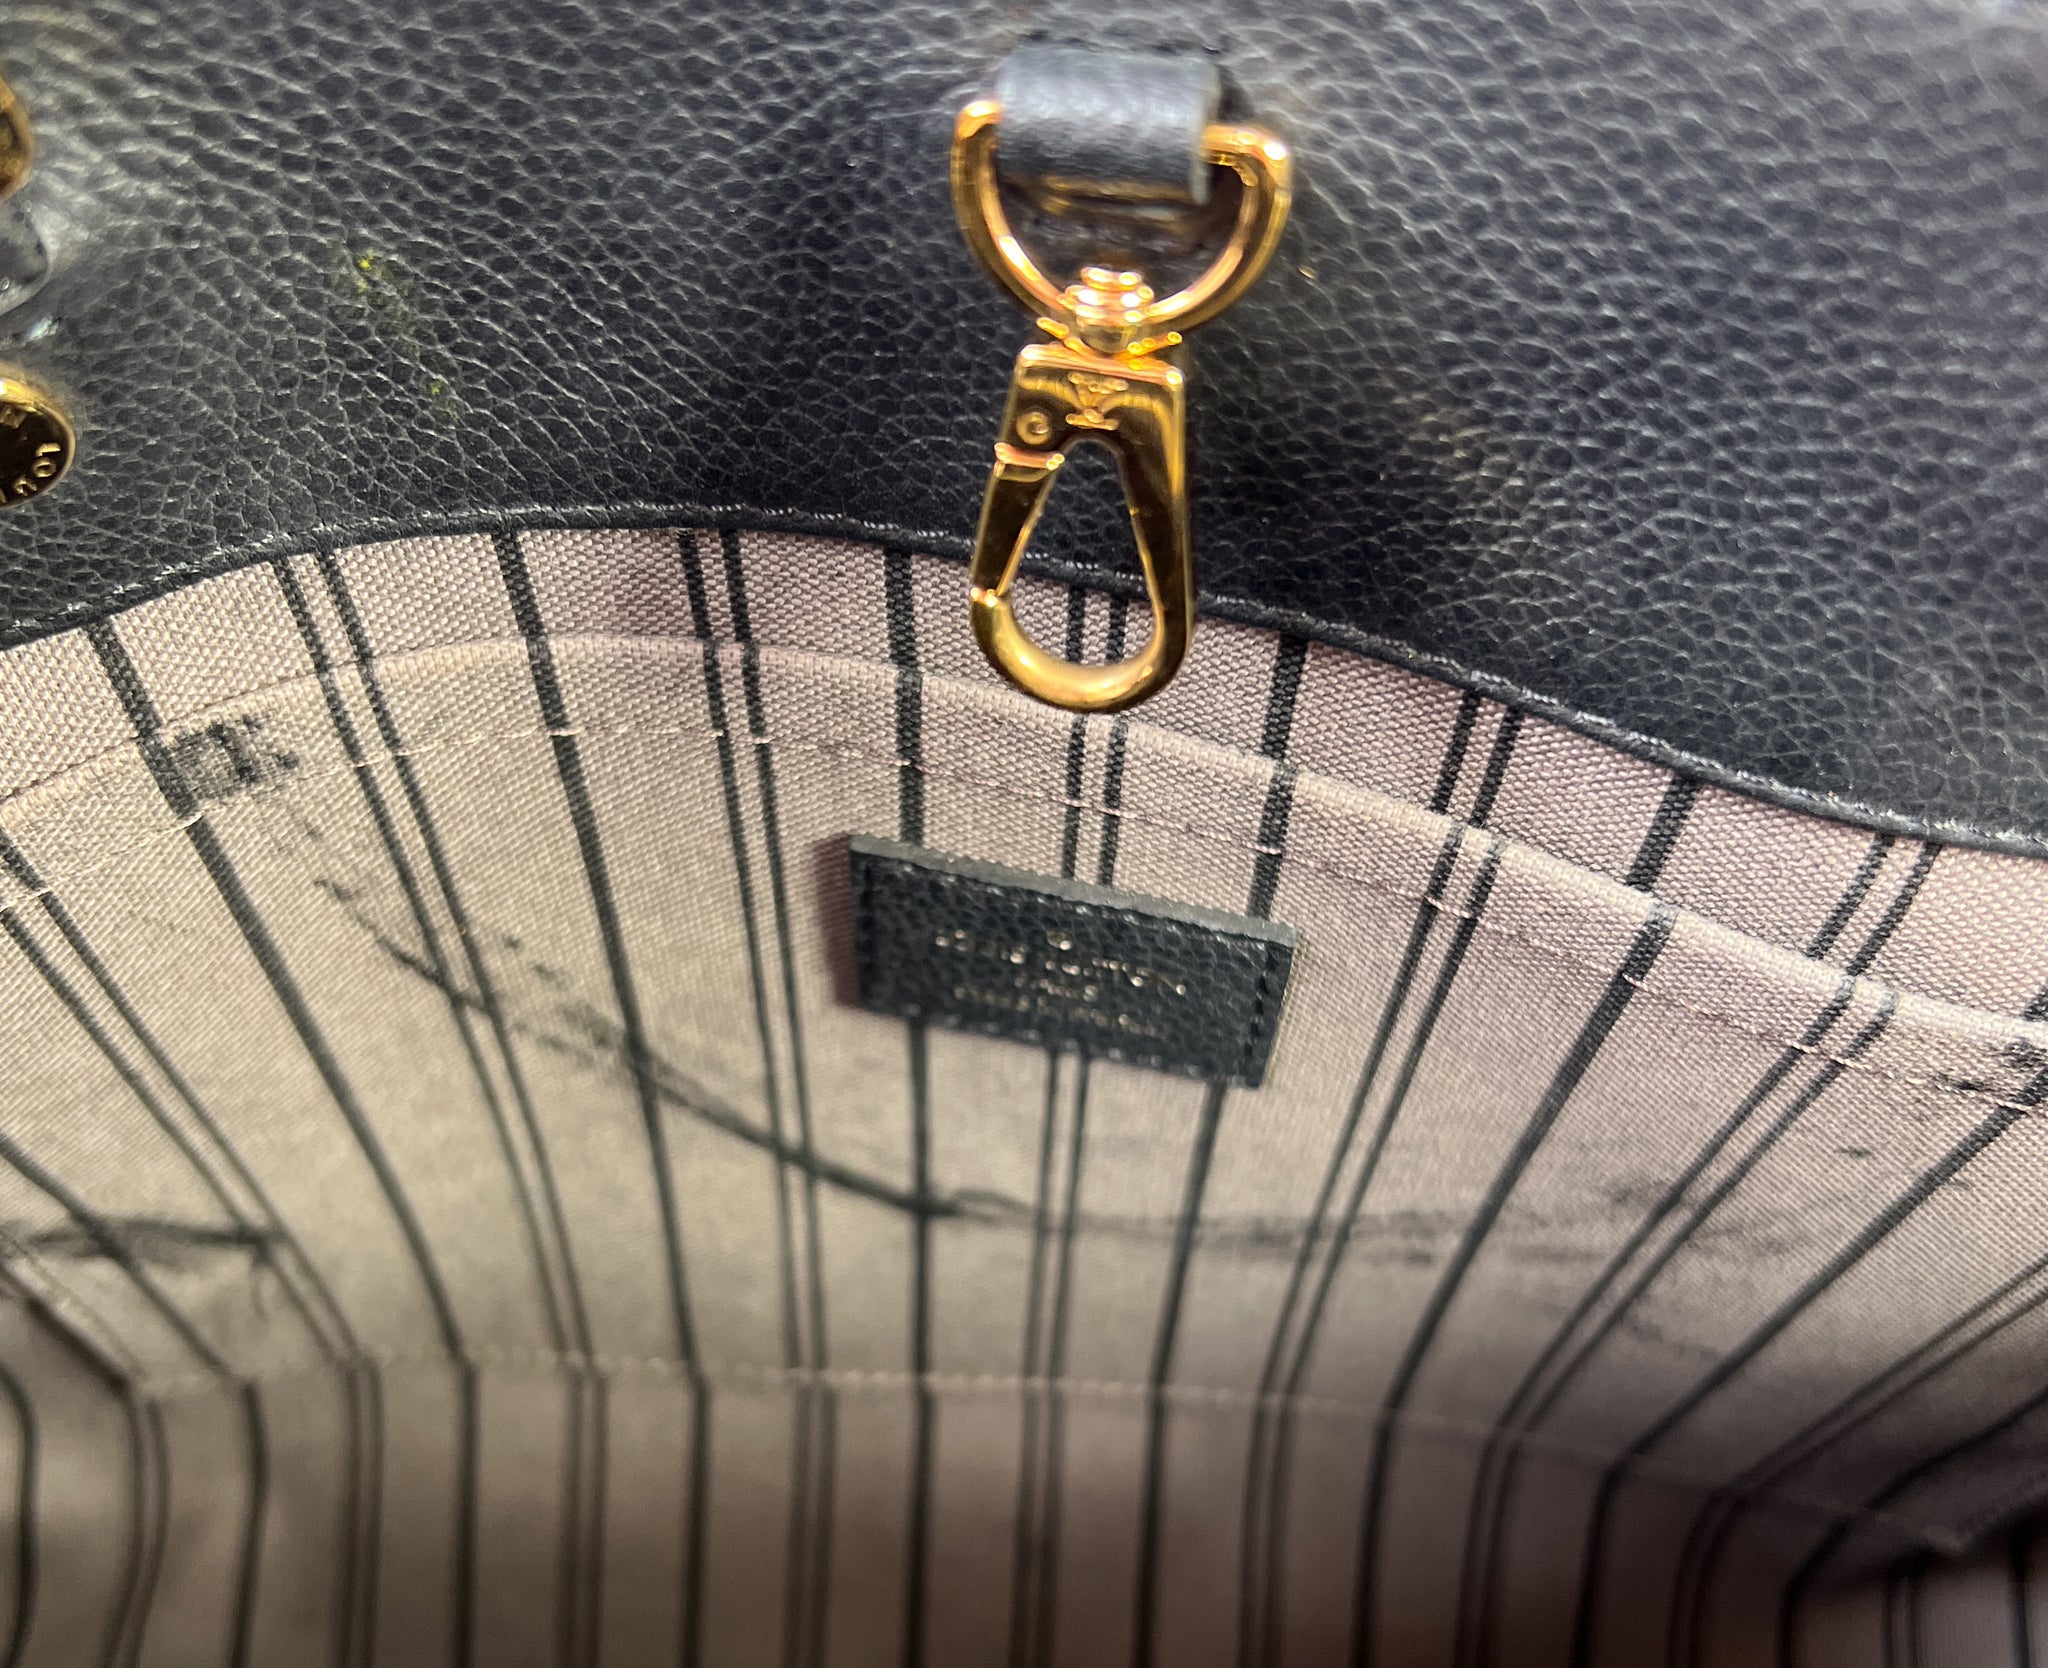 Louis Vuitton black empreinte Montaigne 2014 – My Girlfriend's